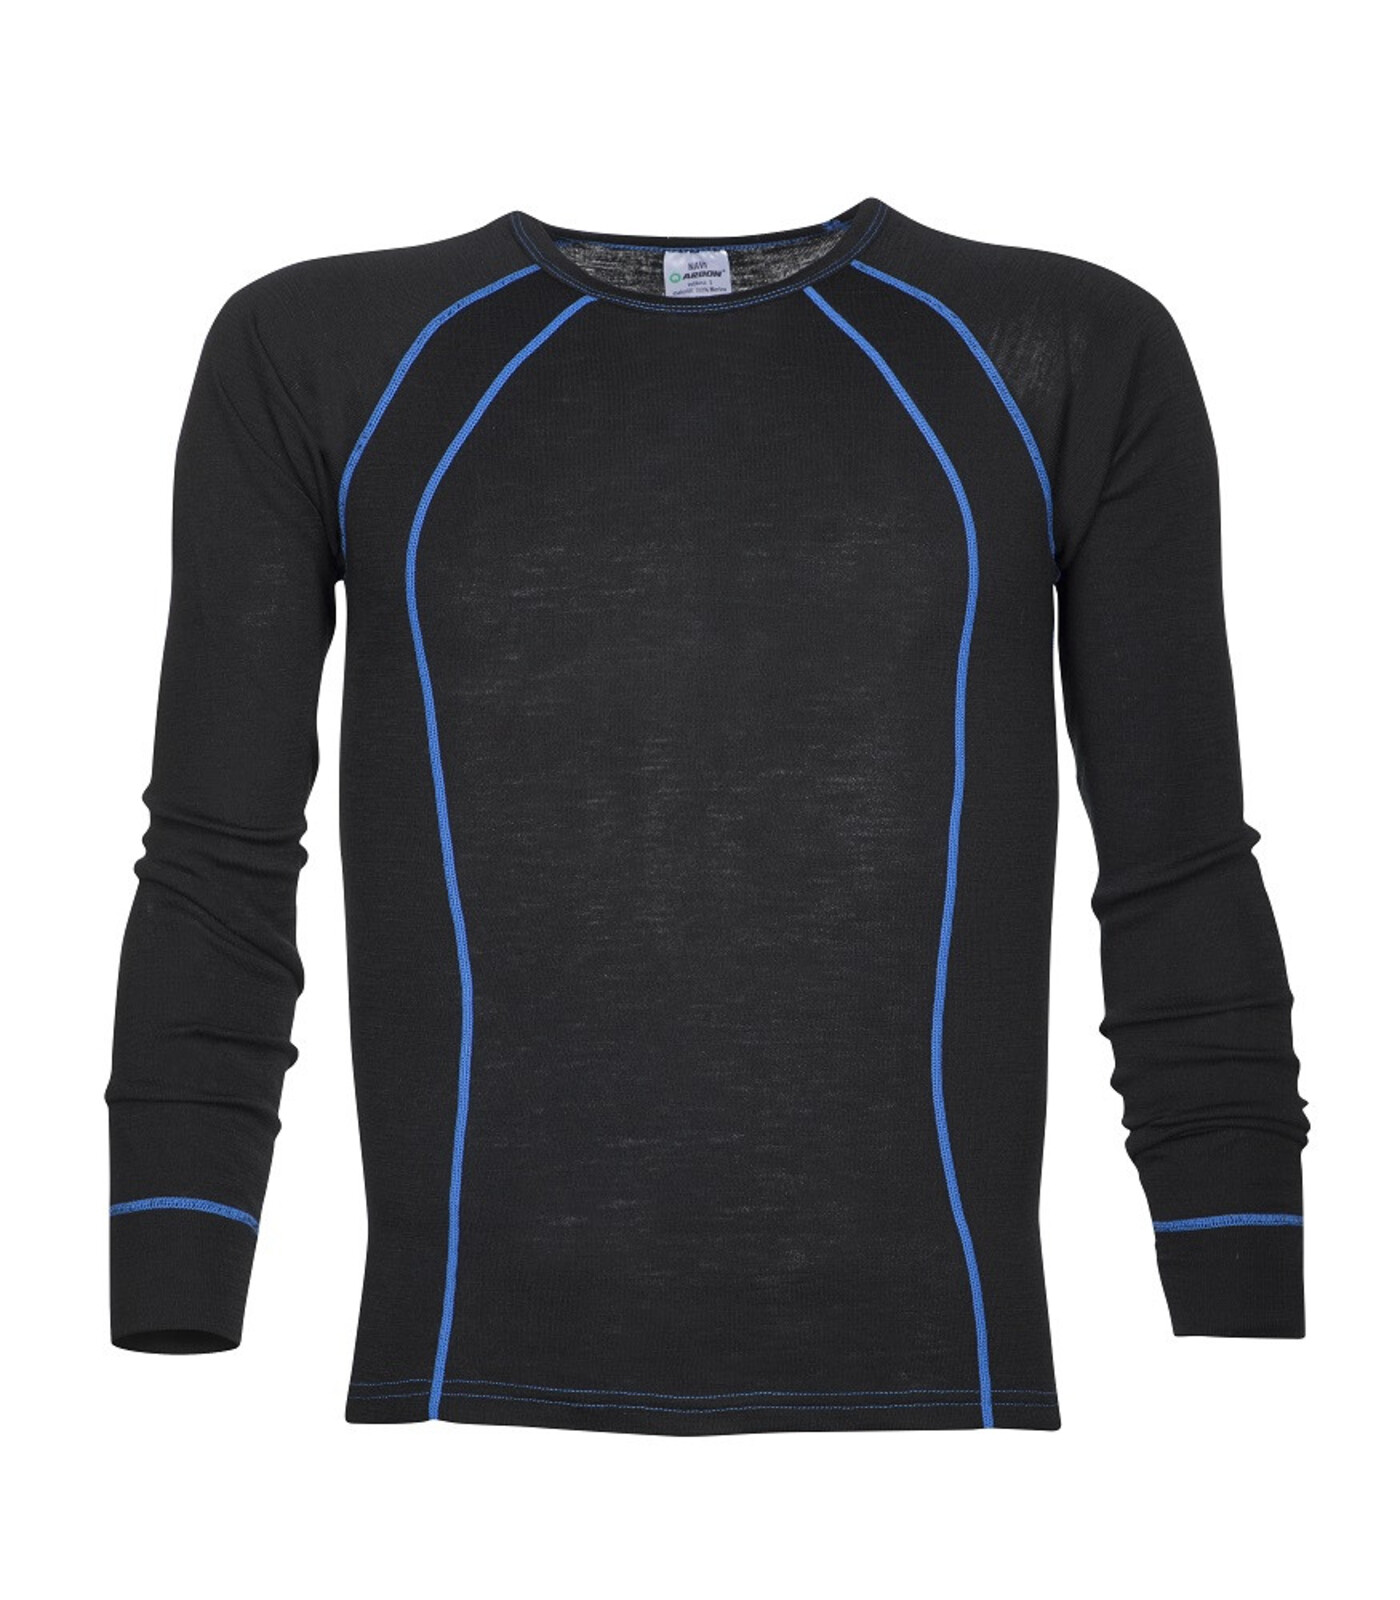 Pánske funkčné merino tričko s dlhým rukávom Ardon Navi - veľkosť: XL, farba: čierna/modrá